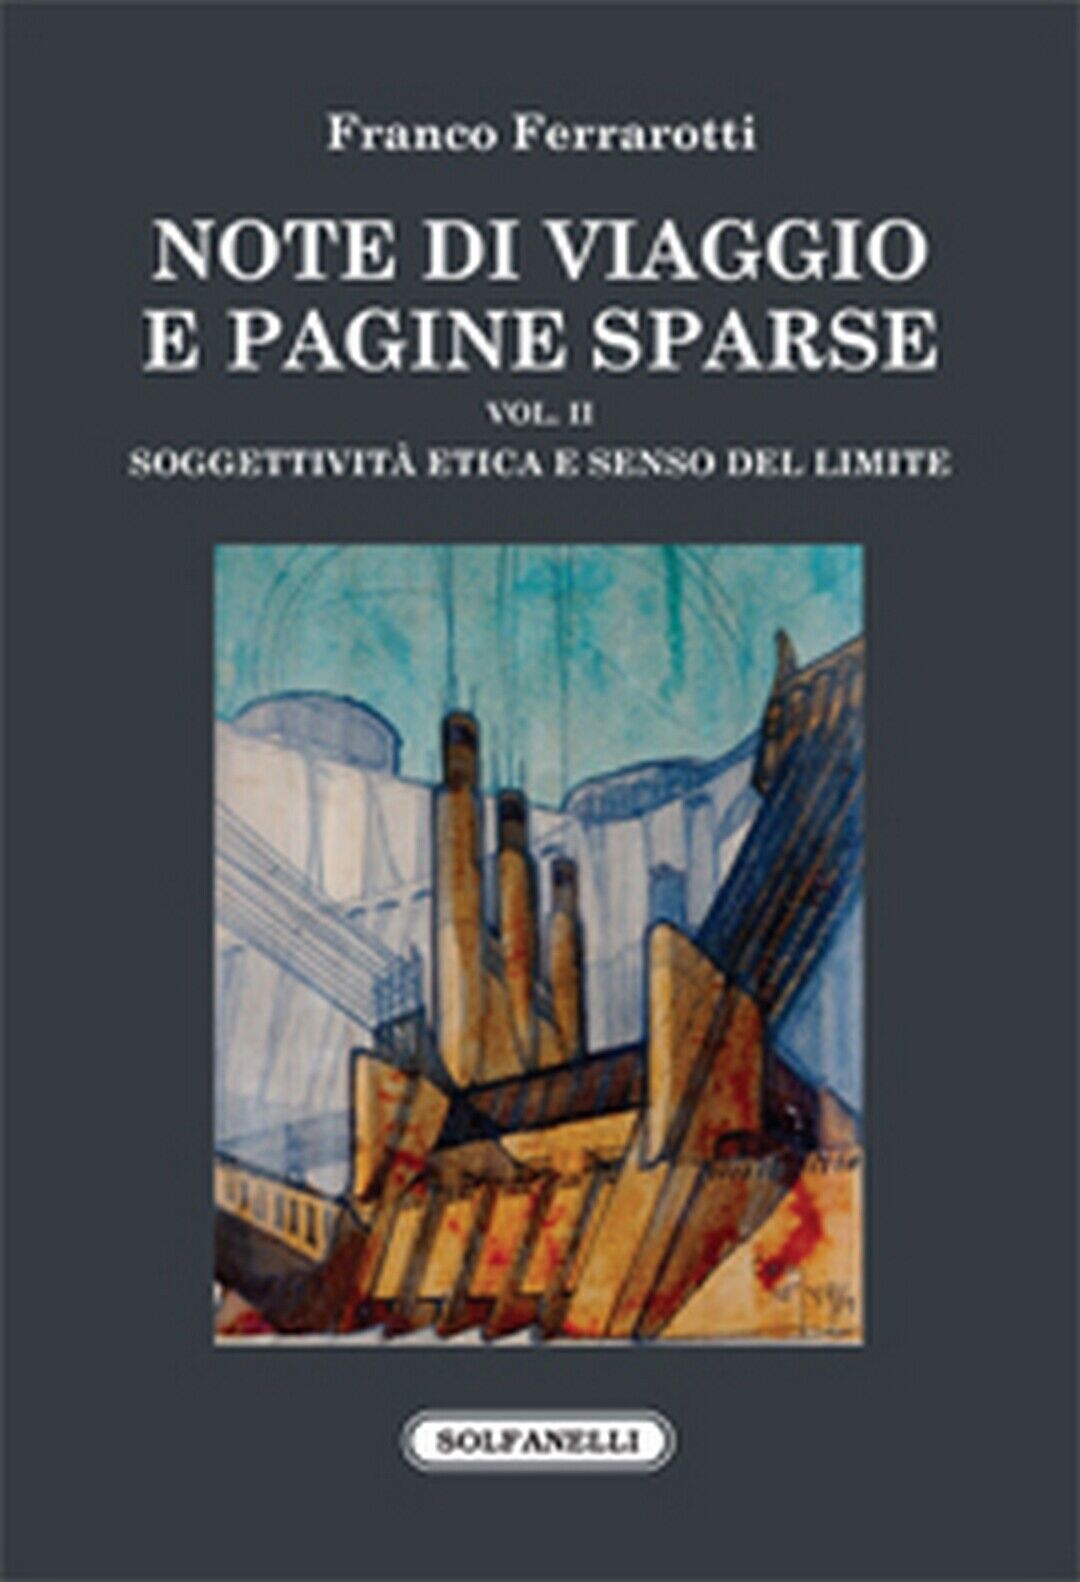 NOTE DI VIAGGIO E PAGINE SPARSE Vol. II  di Franco Ferrarotti,  Solfanelli Ediz. libro usato